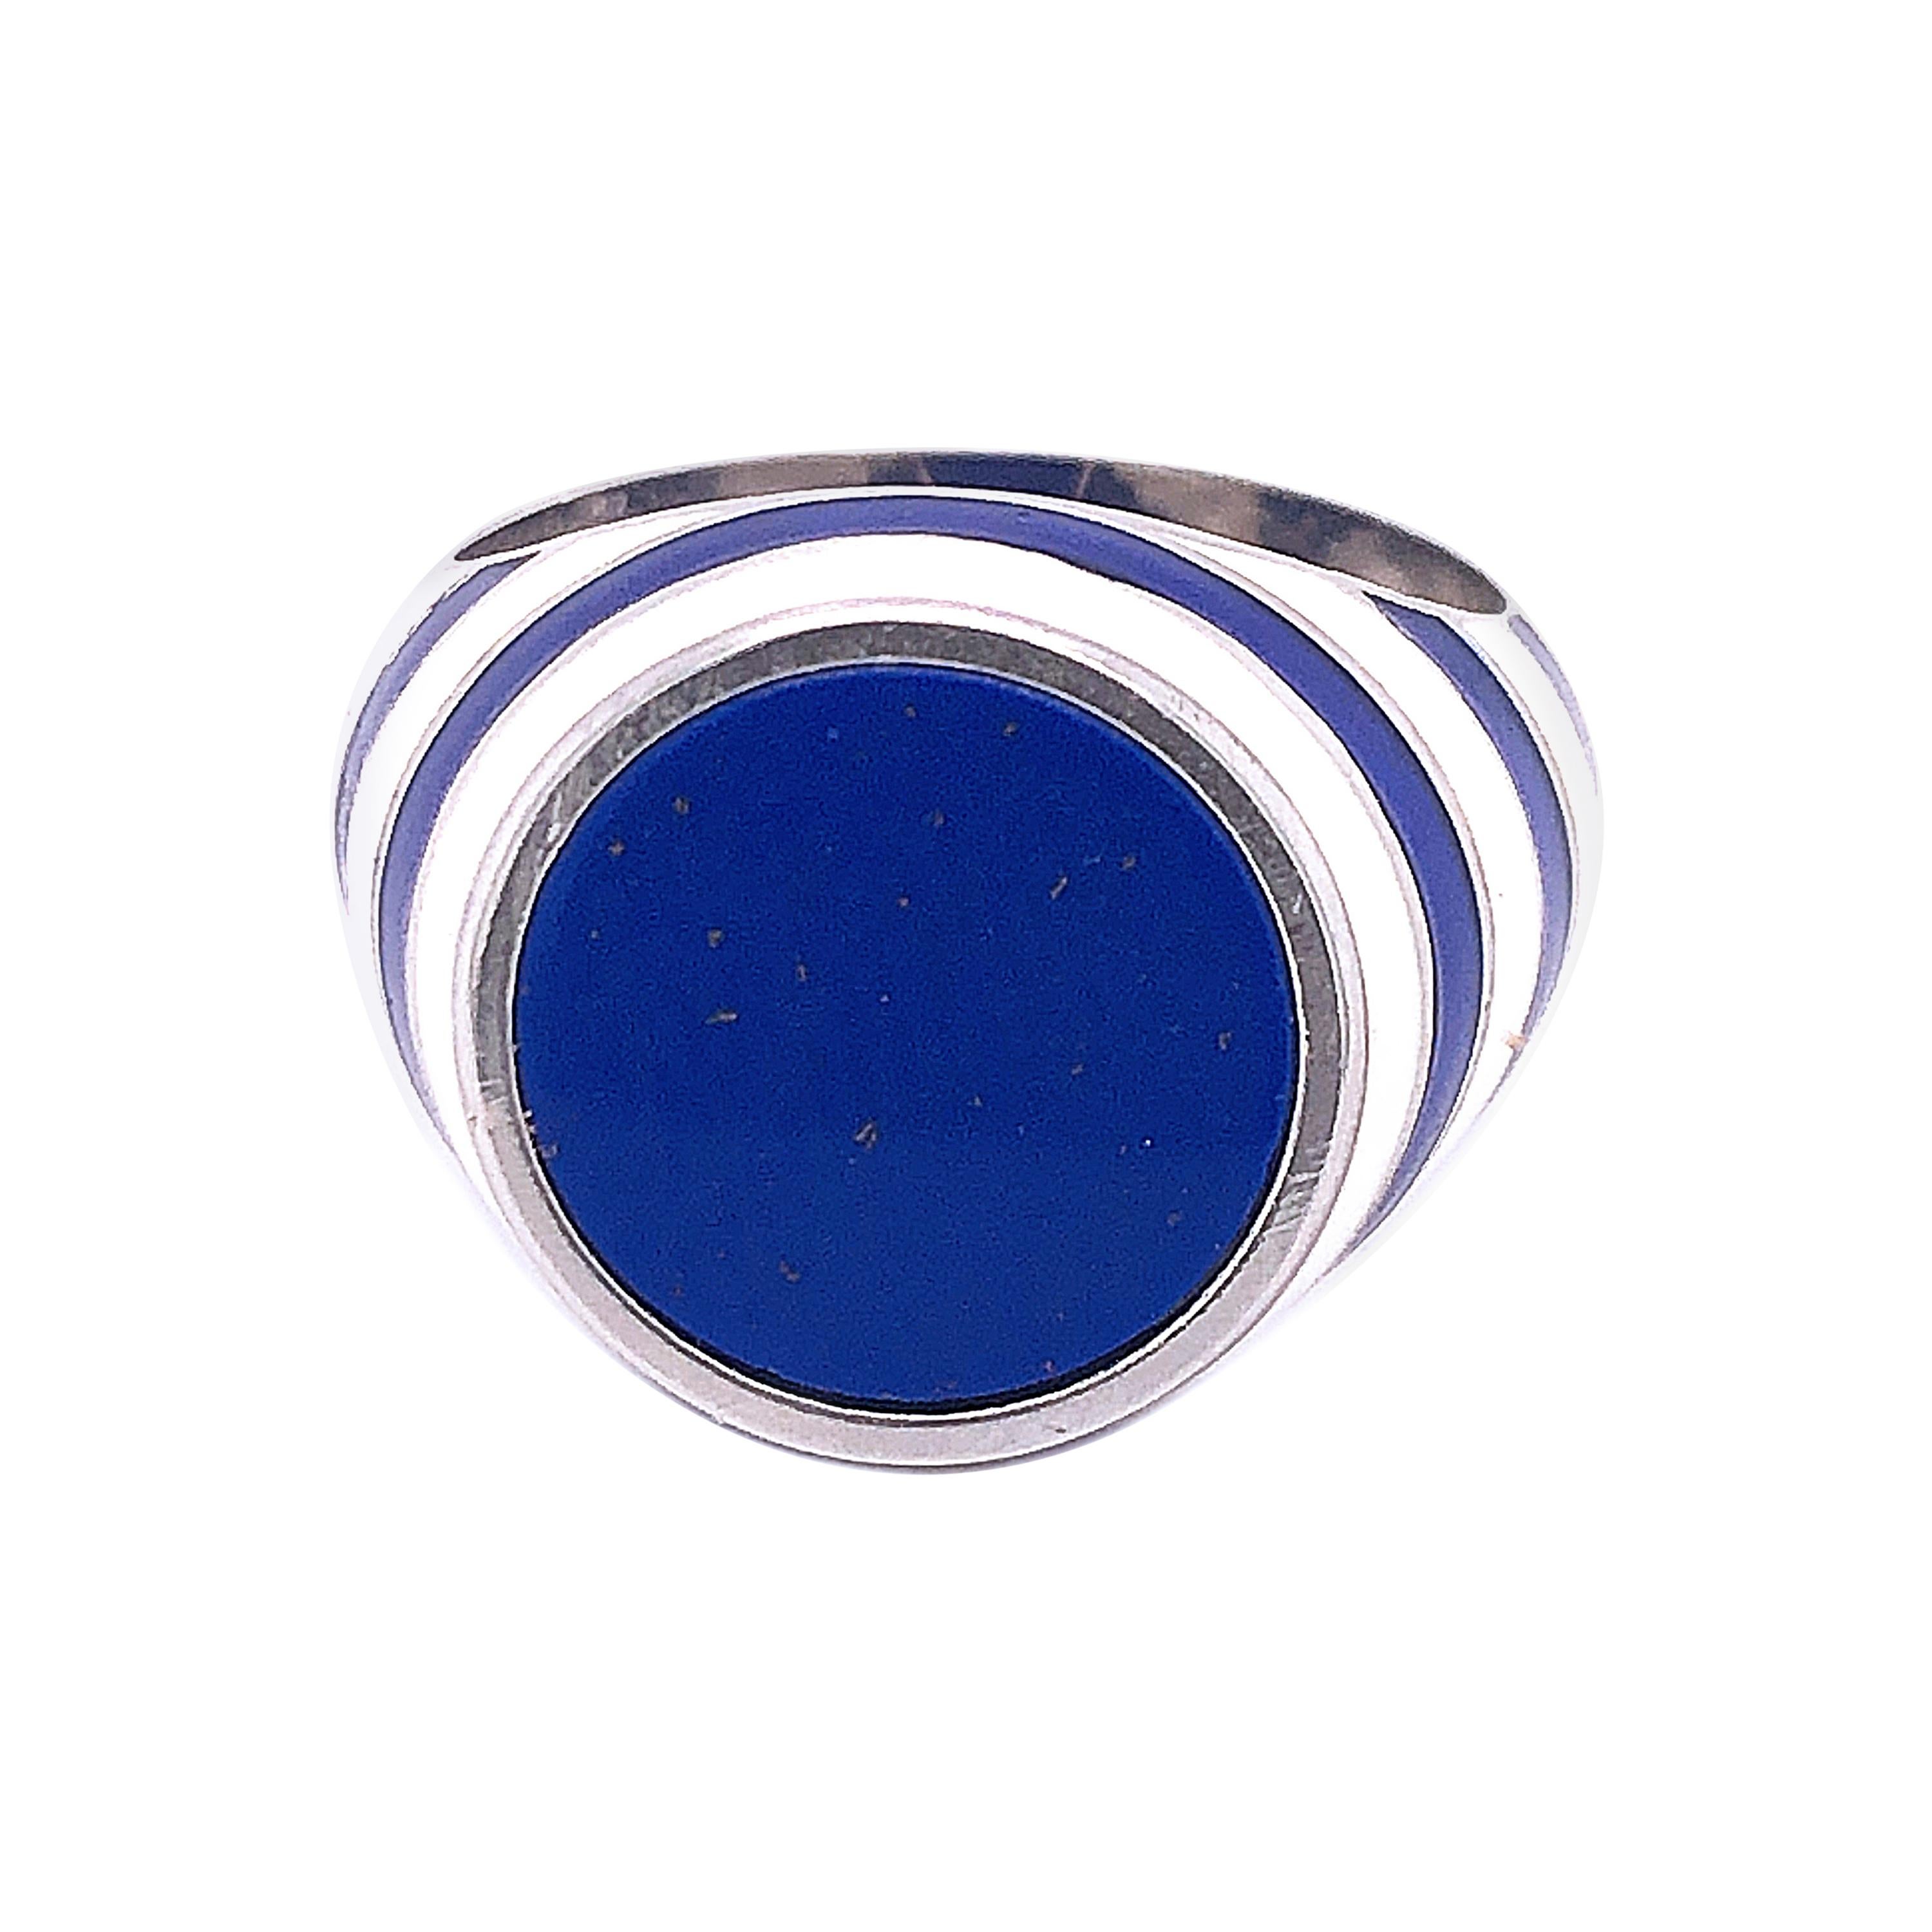 Cocktail-Ring aus Sterlingsilber mit Lapislazuli, weiß-blau emailliertem Lazuli